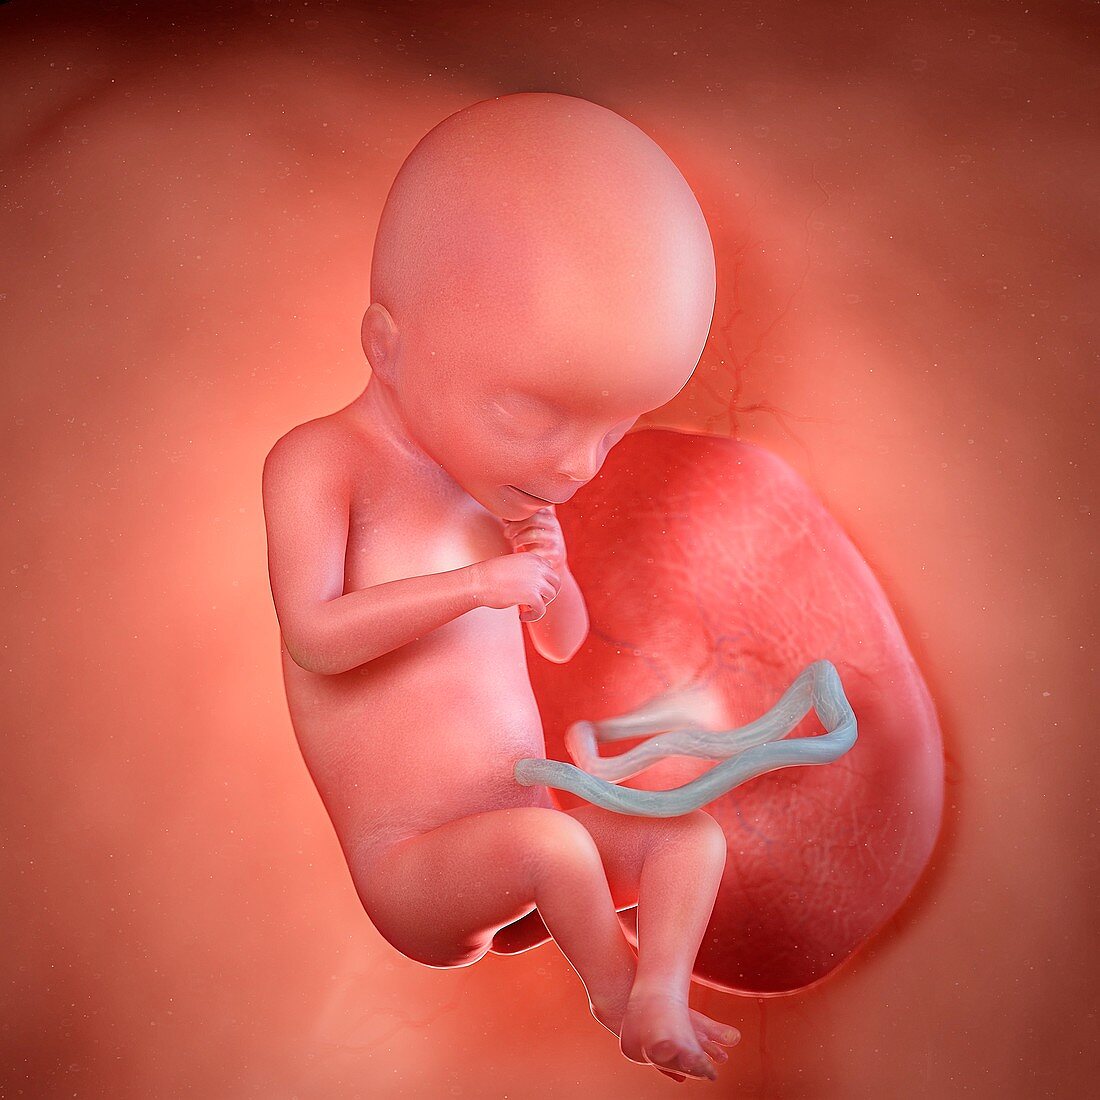 Human foetus age 18 weeks, illustration